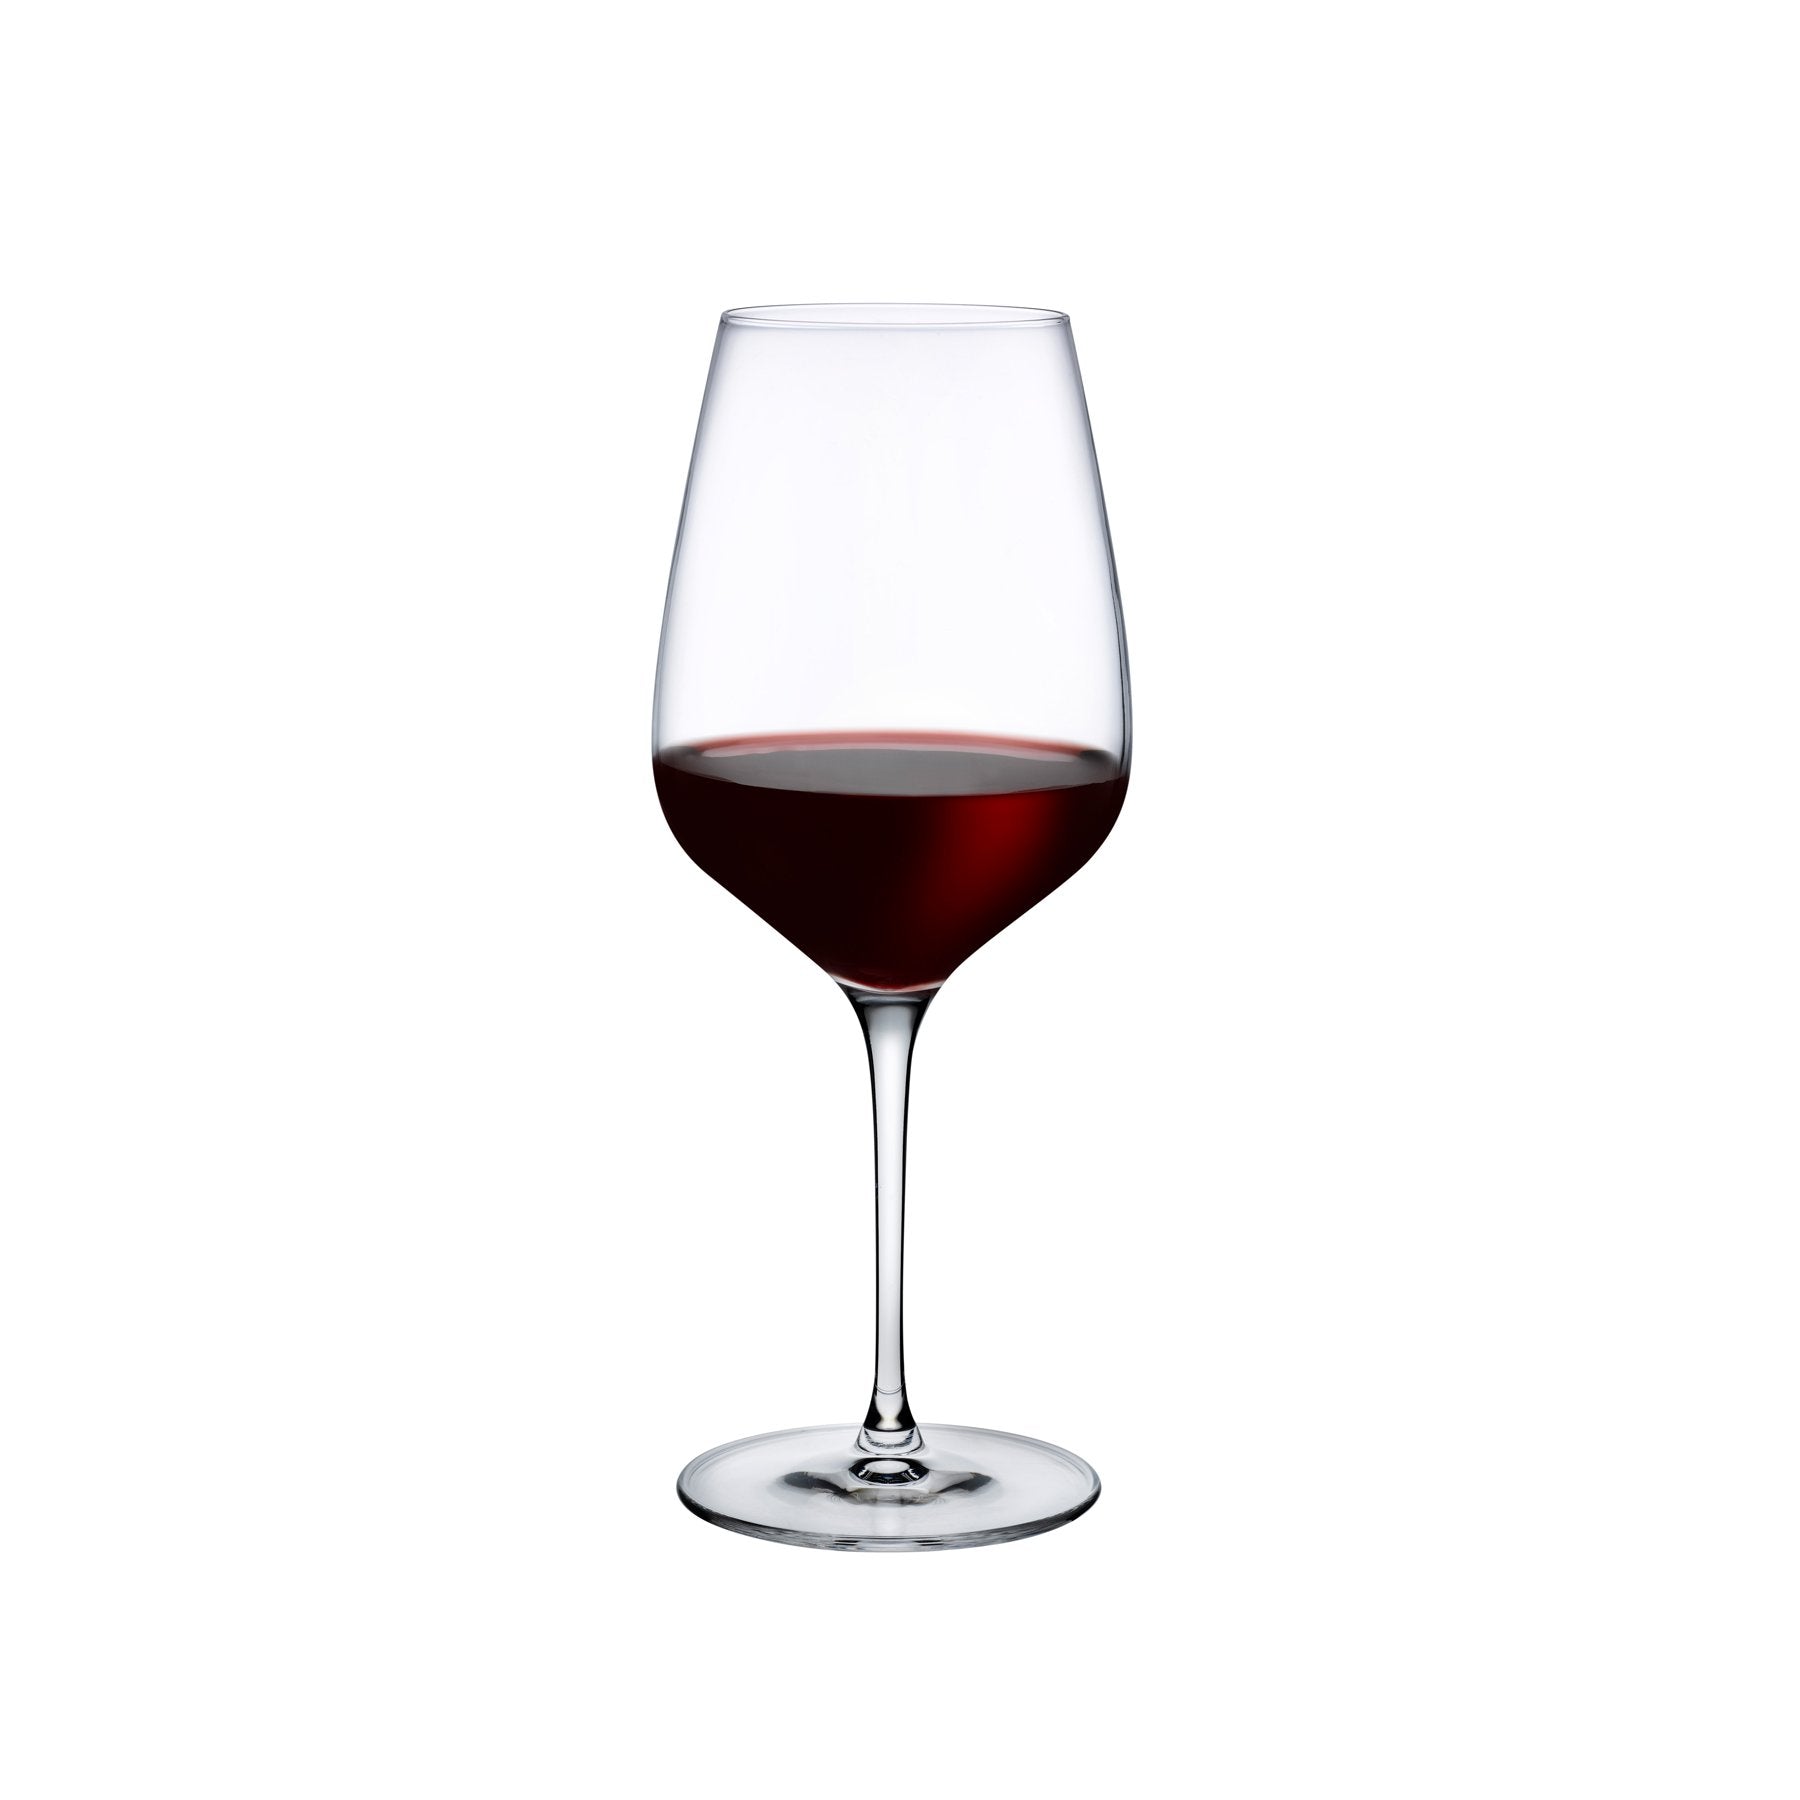 http://eu.nudeglass.com/cdn/shop/products/Plain_-_Refine_Red_Wine_Glass_-_67092_-_1080824_v2.jpg?v=1651251173